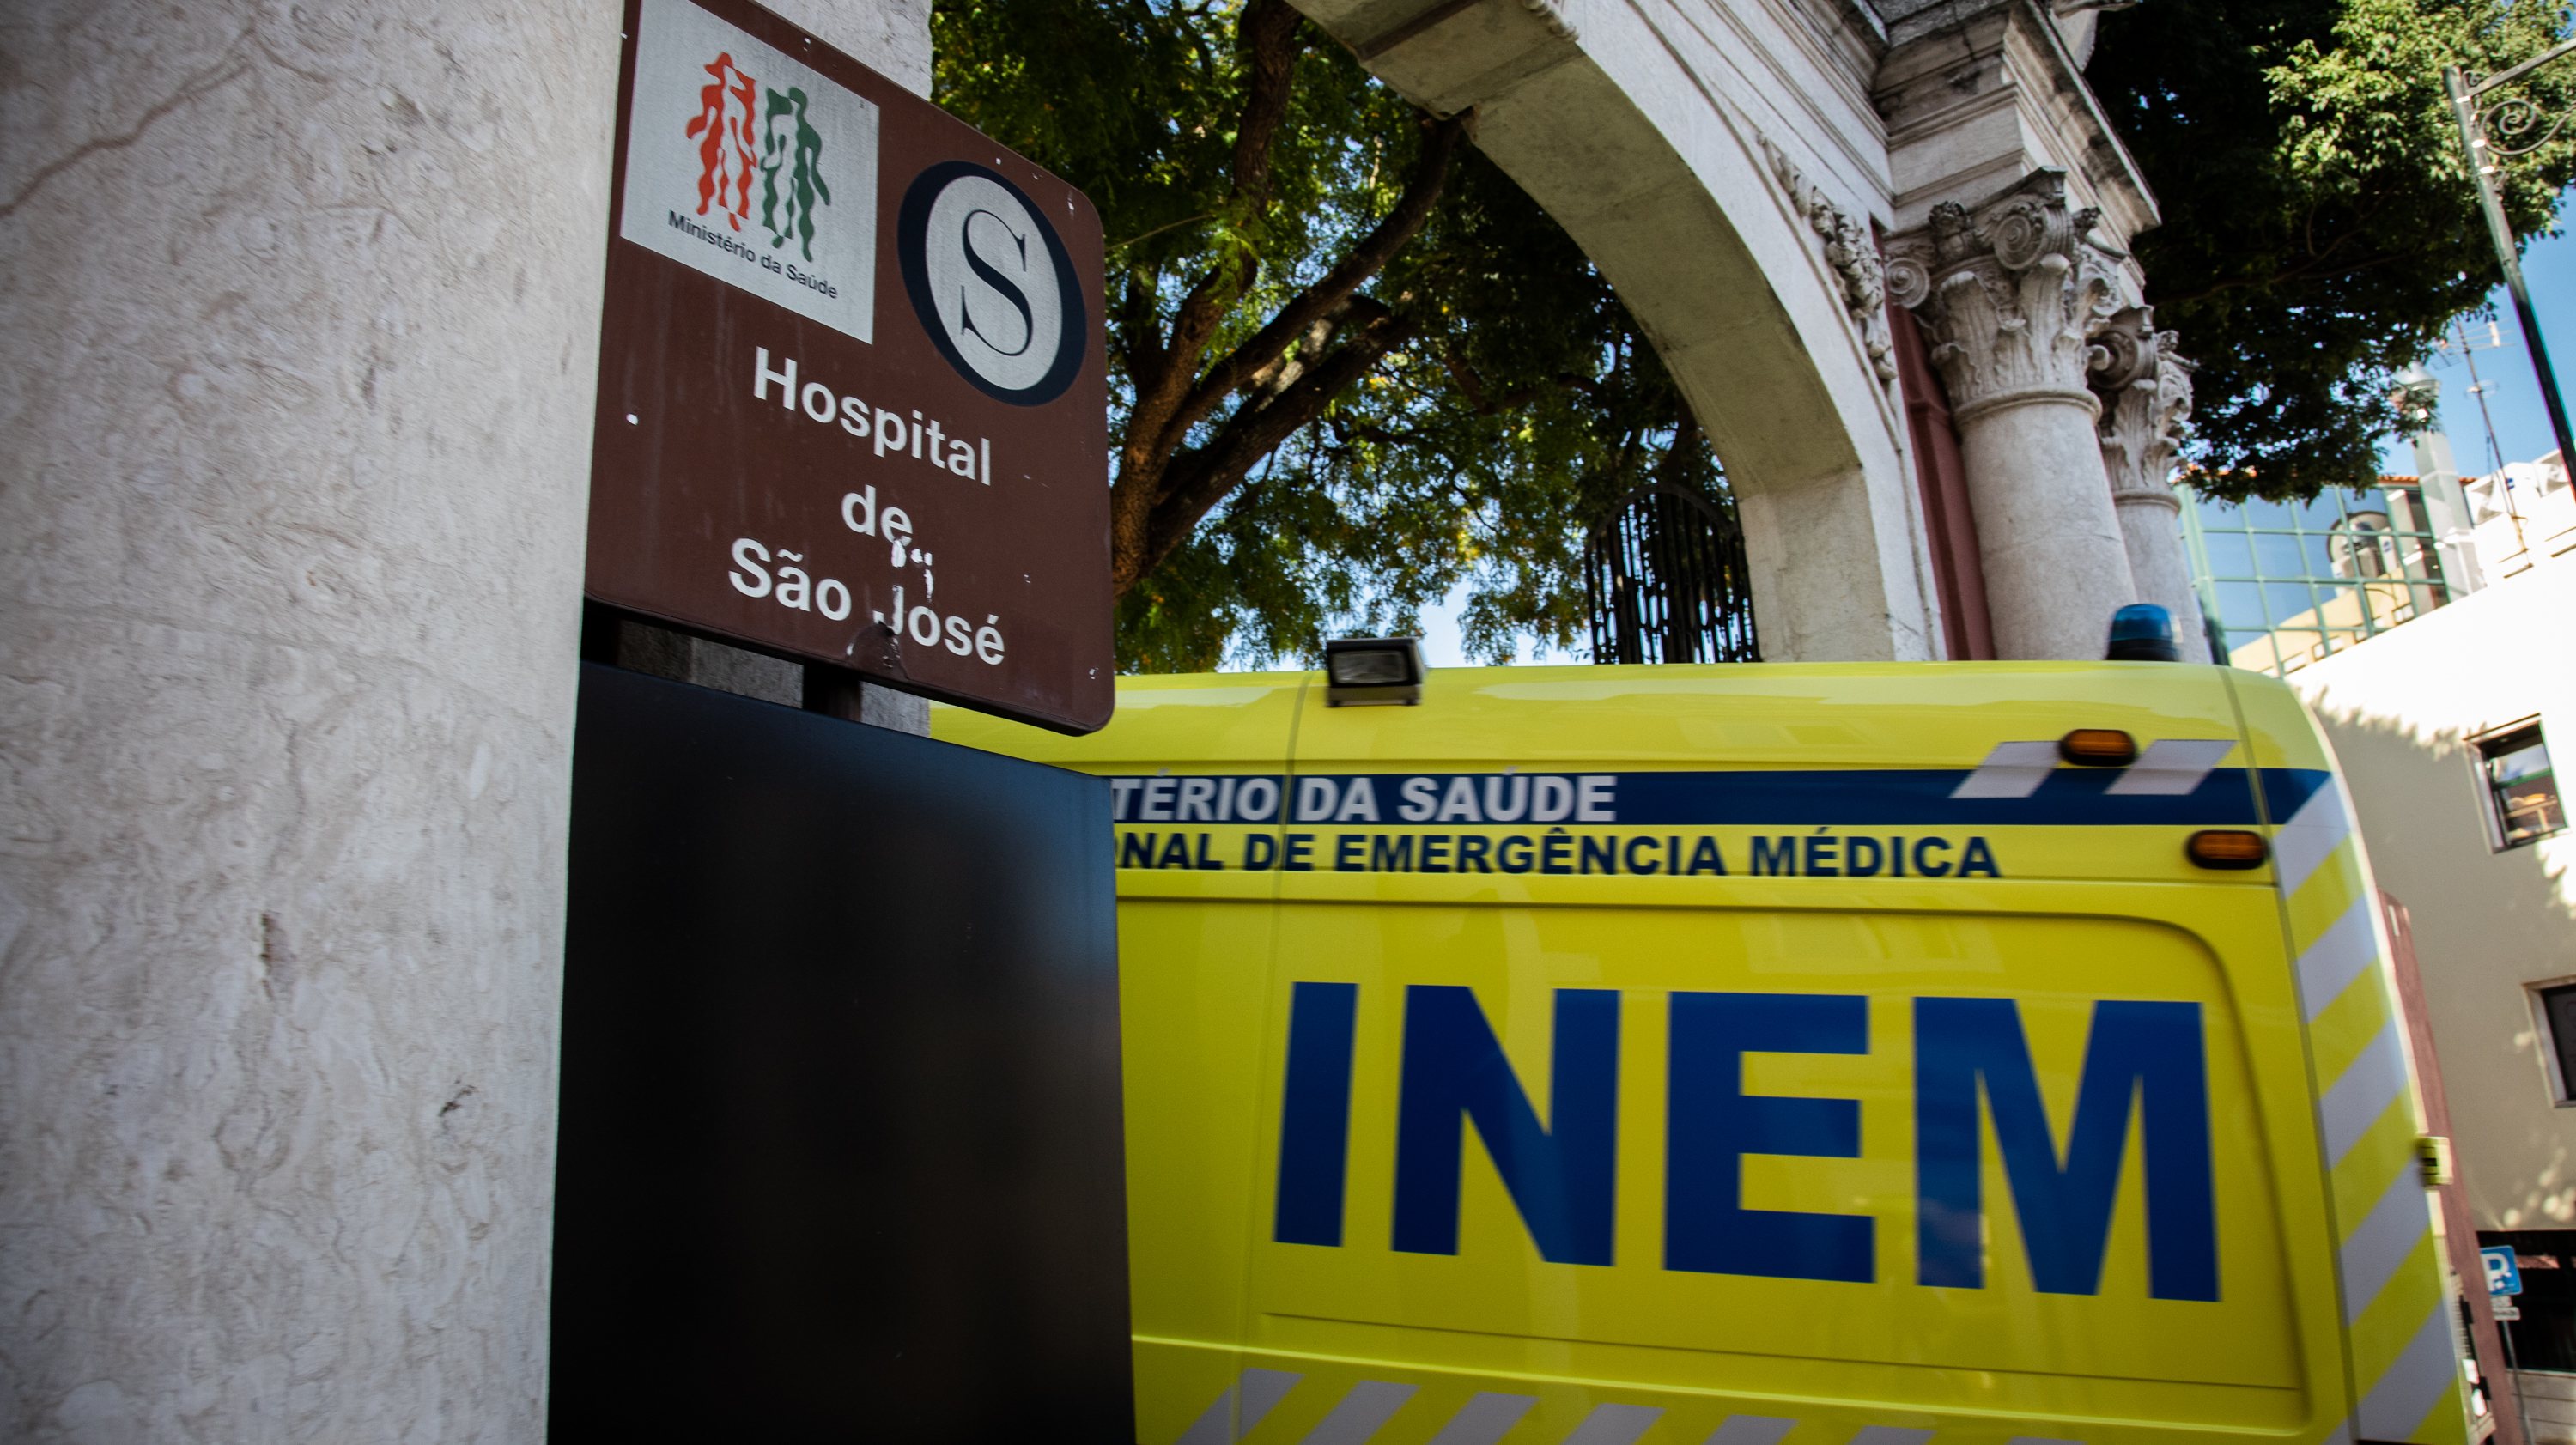 Pedro Soares Branco trabalhava no Hospital de São José (na foto), que faz parte do Centro Hospitalar de Lisboa Central